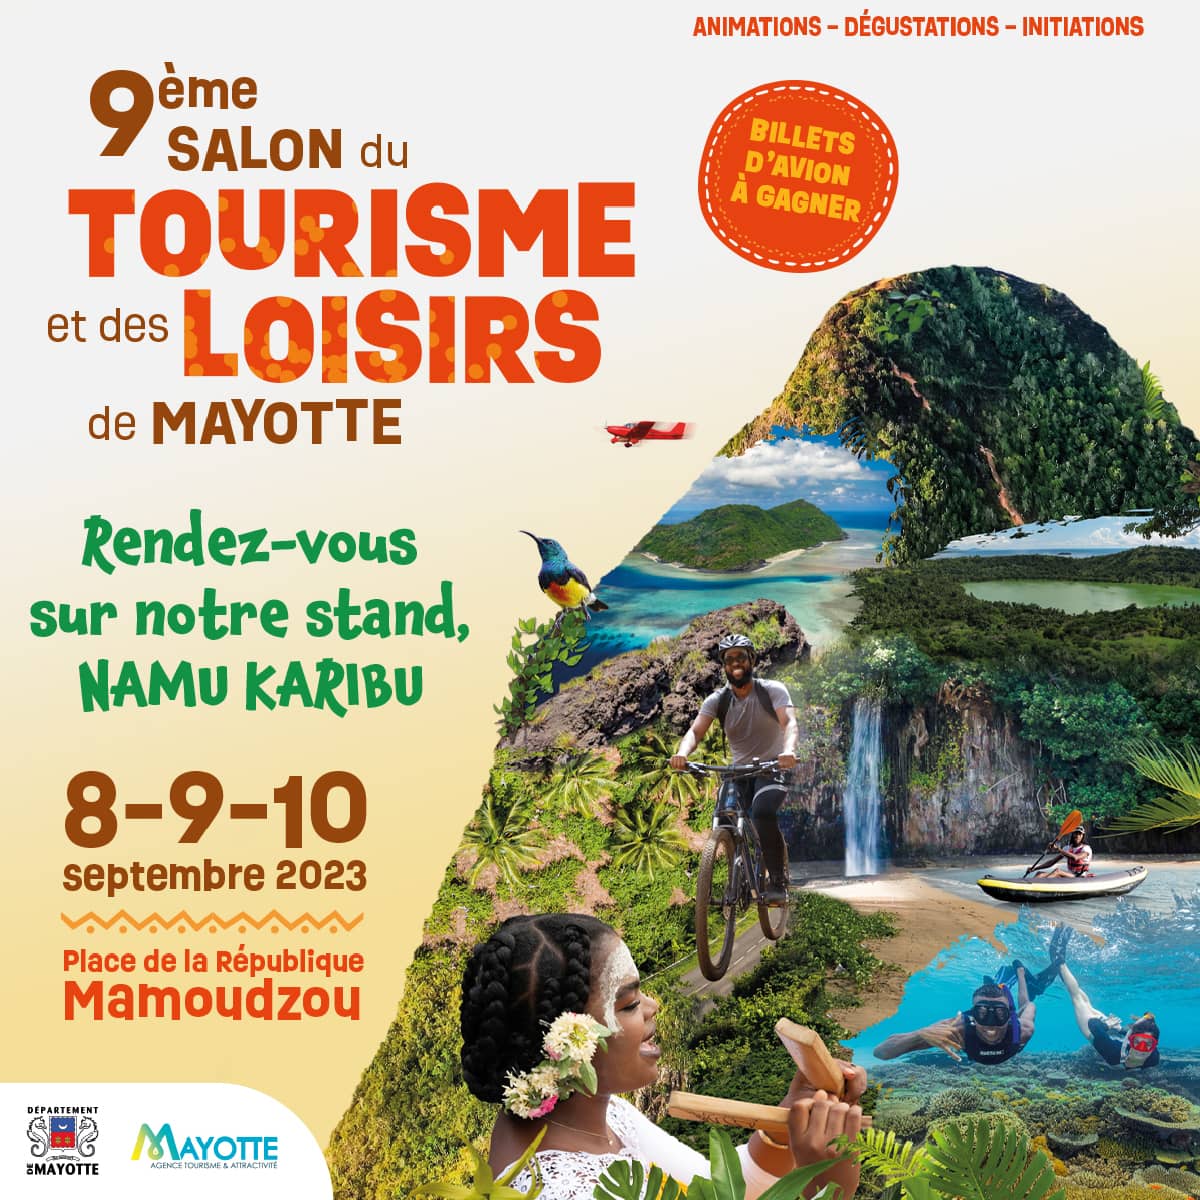 Rendez-vous du 8 au 10 septembre 2023 au salon du tourisme et des loisirs de Mayotte